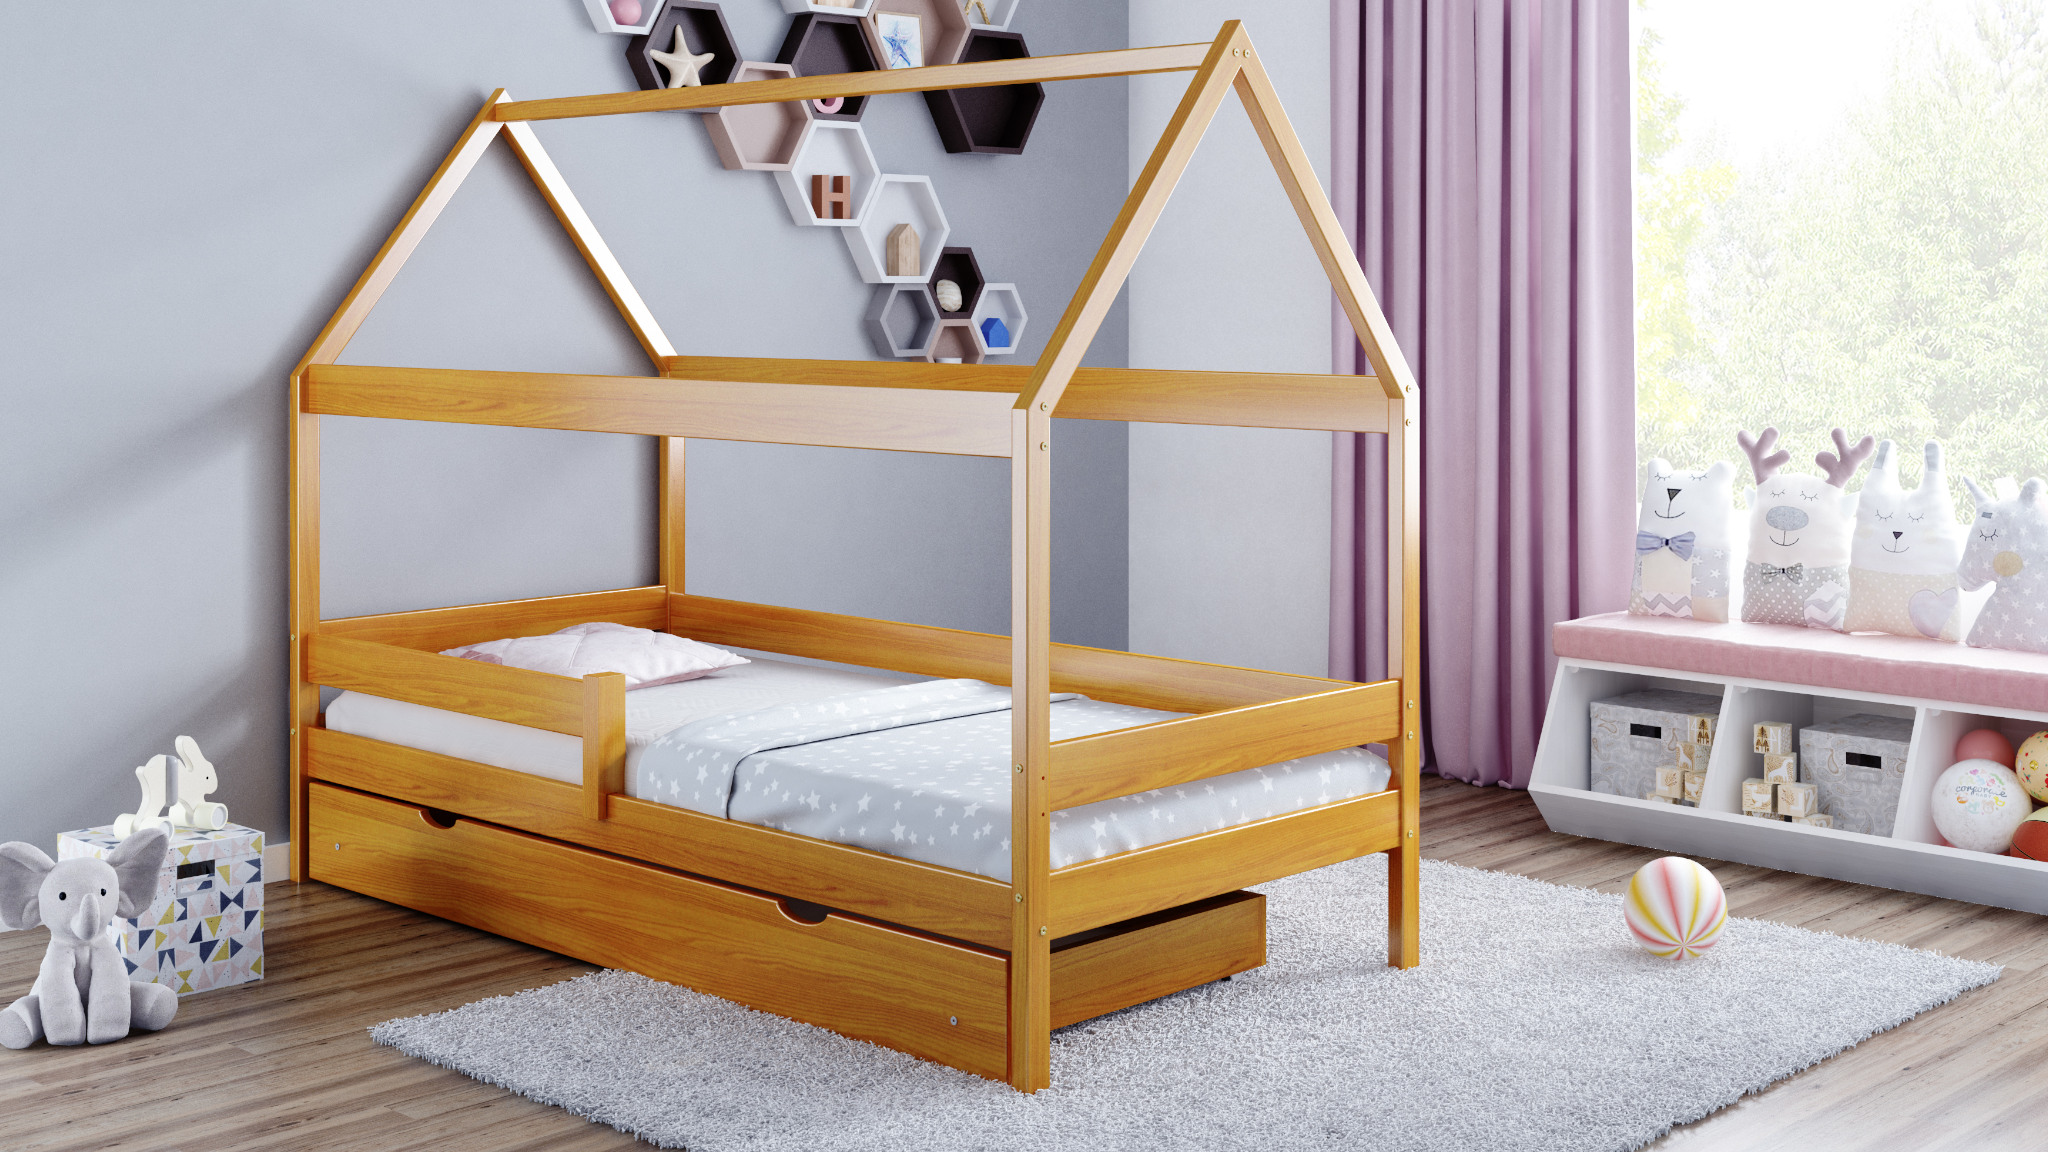 Detská posteľ Domček 160x80 10 barevných variant !!! 